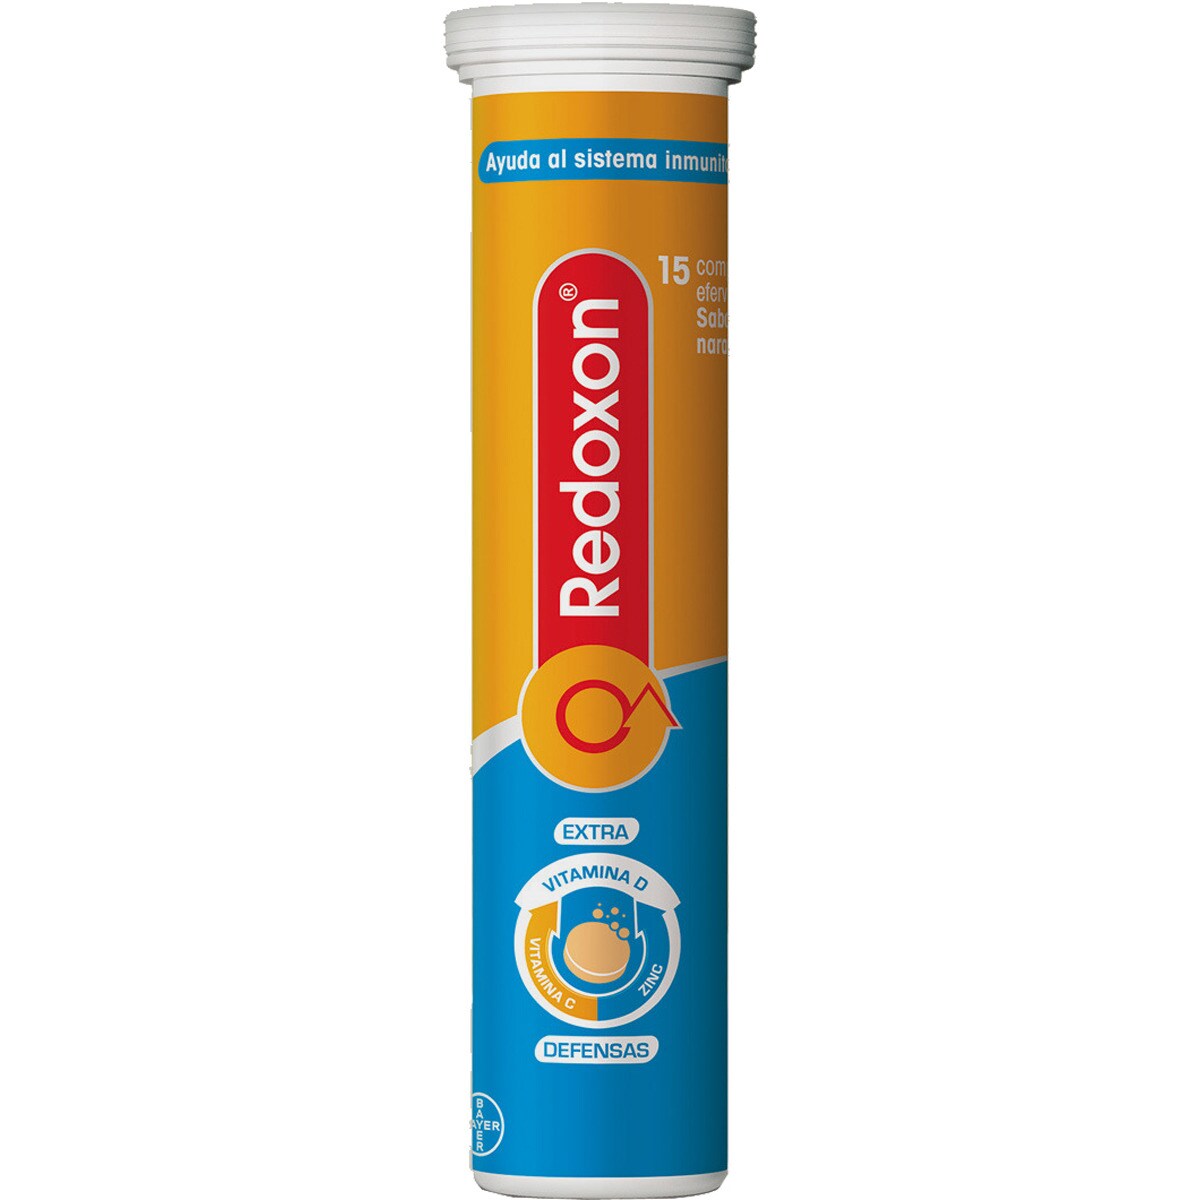 REDOXON Doble acción comprimidos que ayudan al sistema inmunitario con Vitamina C y Zinc caja 15 comprimidos efervescentes sabor naranja